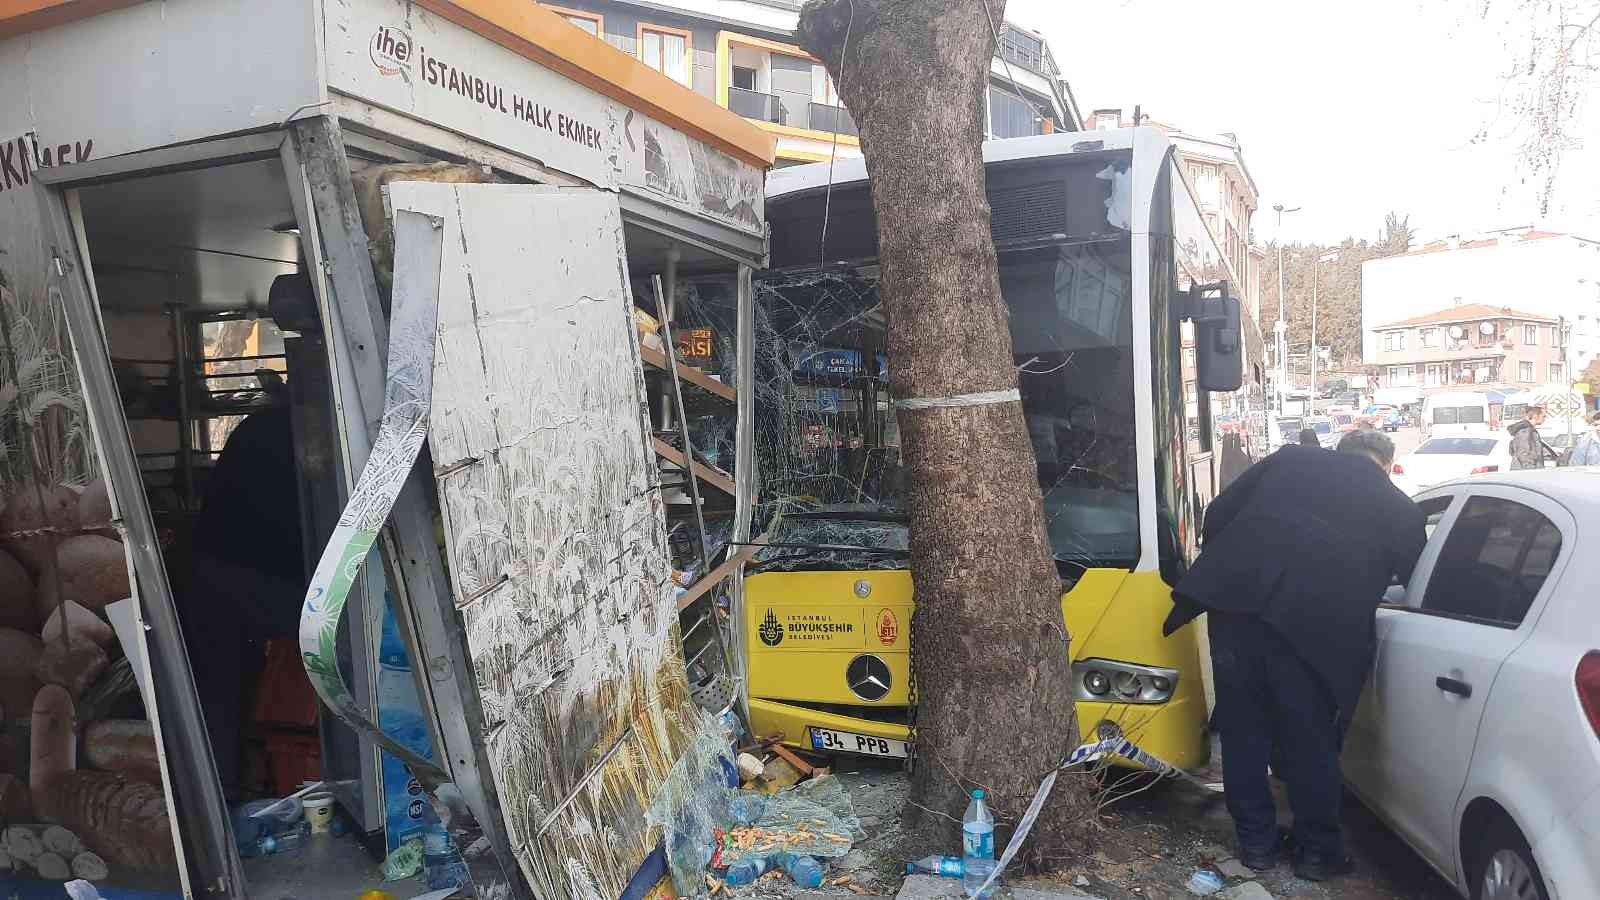 Beyoğlu’nda İETT otobüsü Halk Ekmek büfesine daldı, facianın eşiğinden dönüldü #istanbul